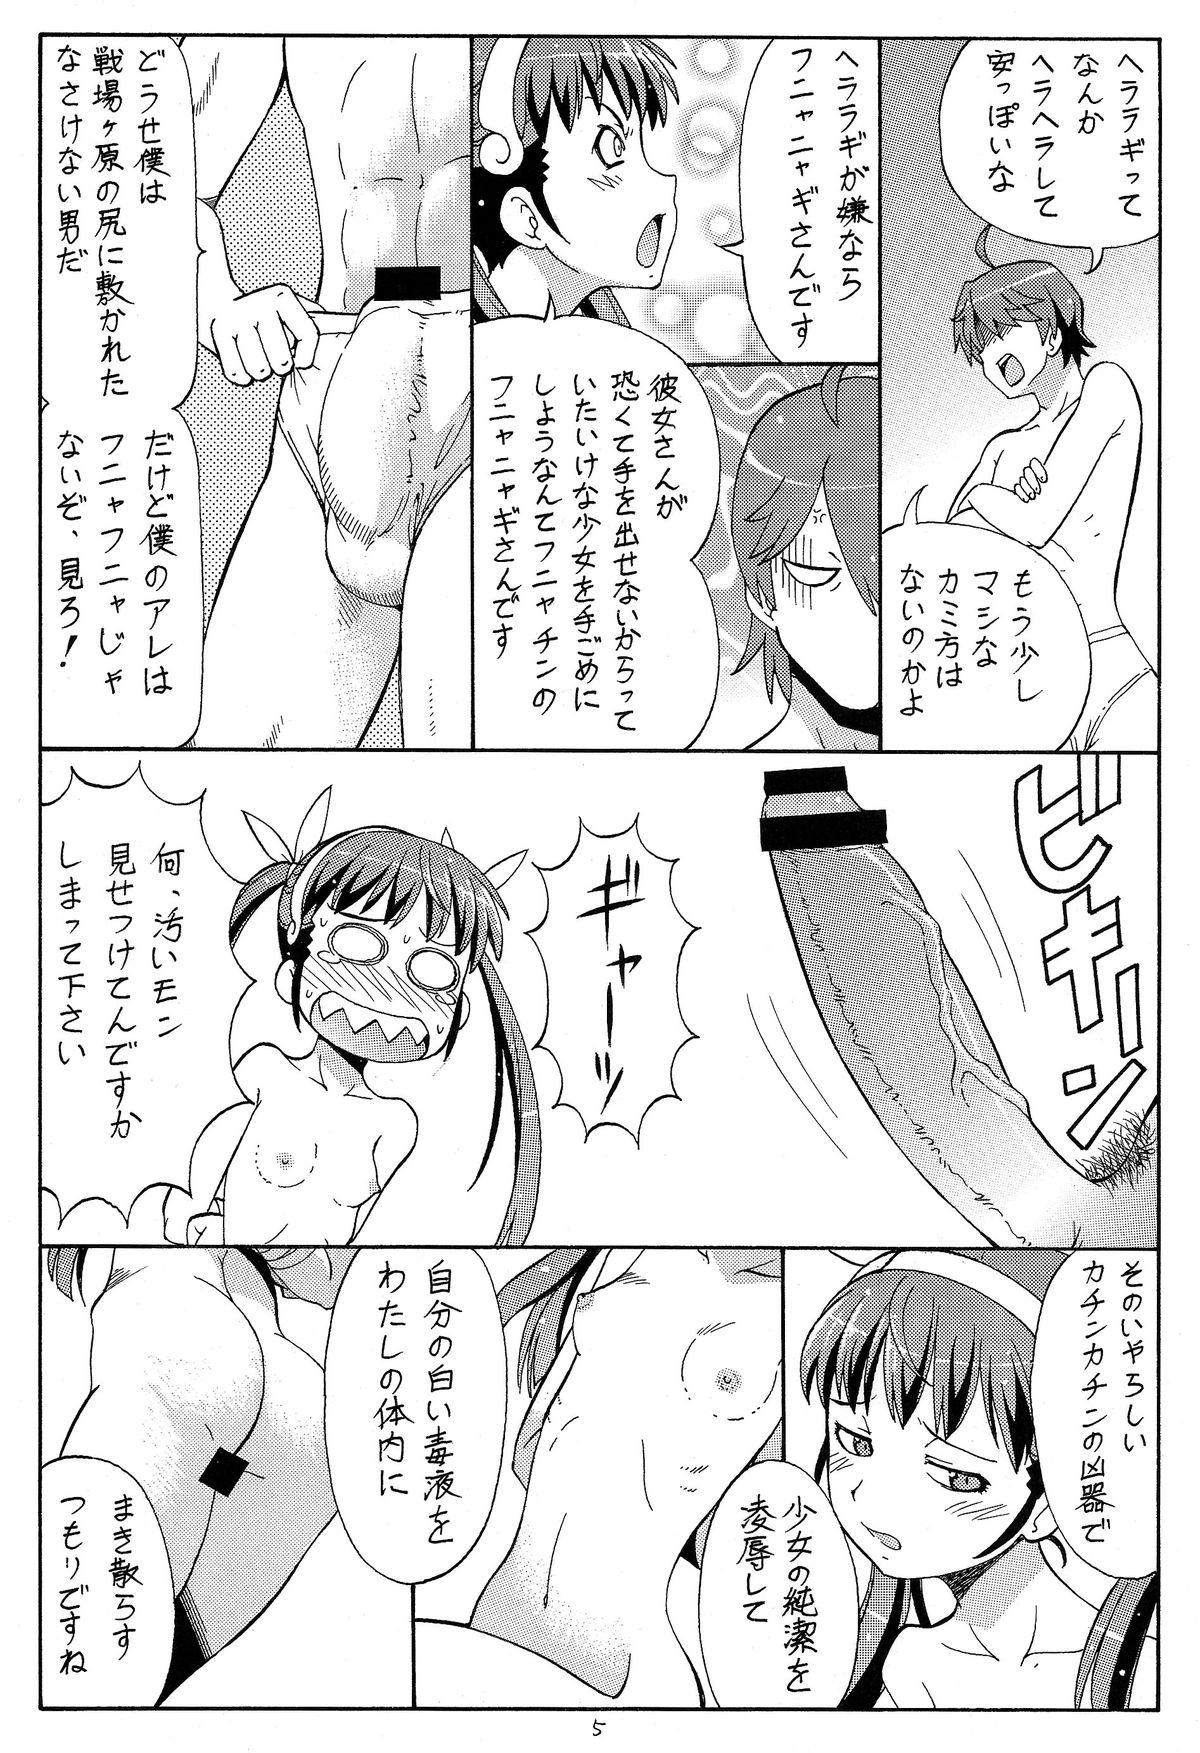 High Hito ni Hakanai to Kaite "Araragi" to Yomu 4 - Bakemonogatari White Girl - Page 7